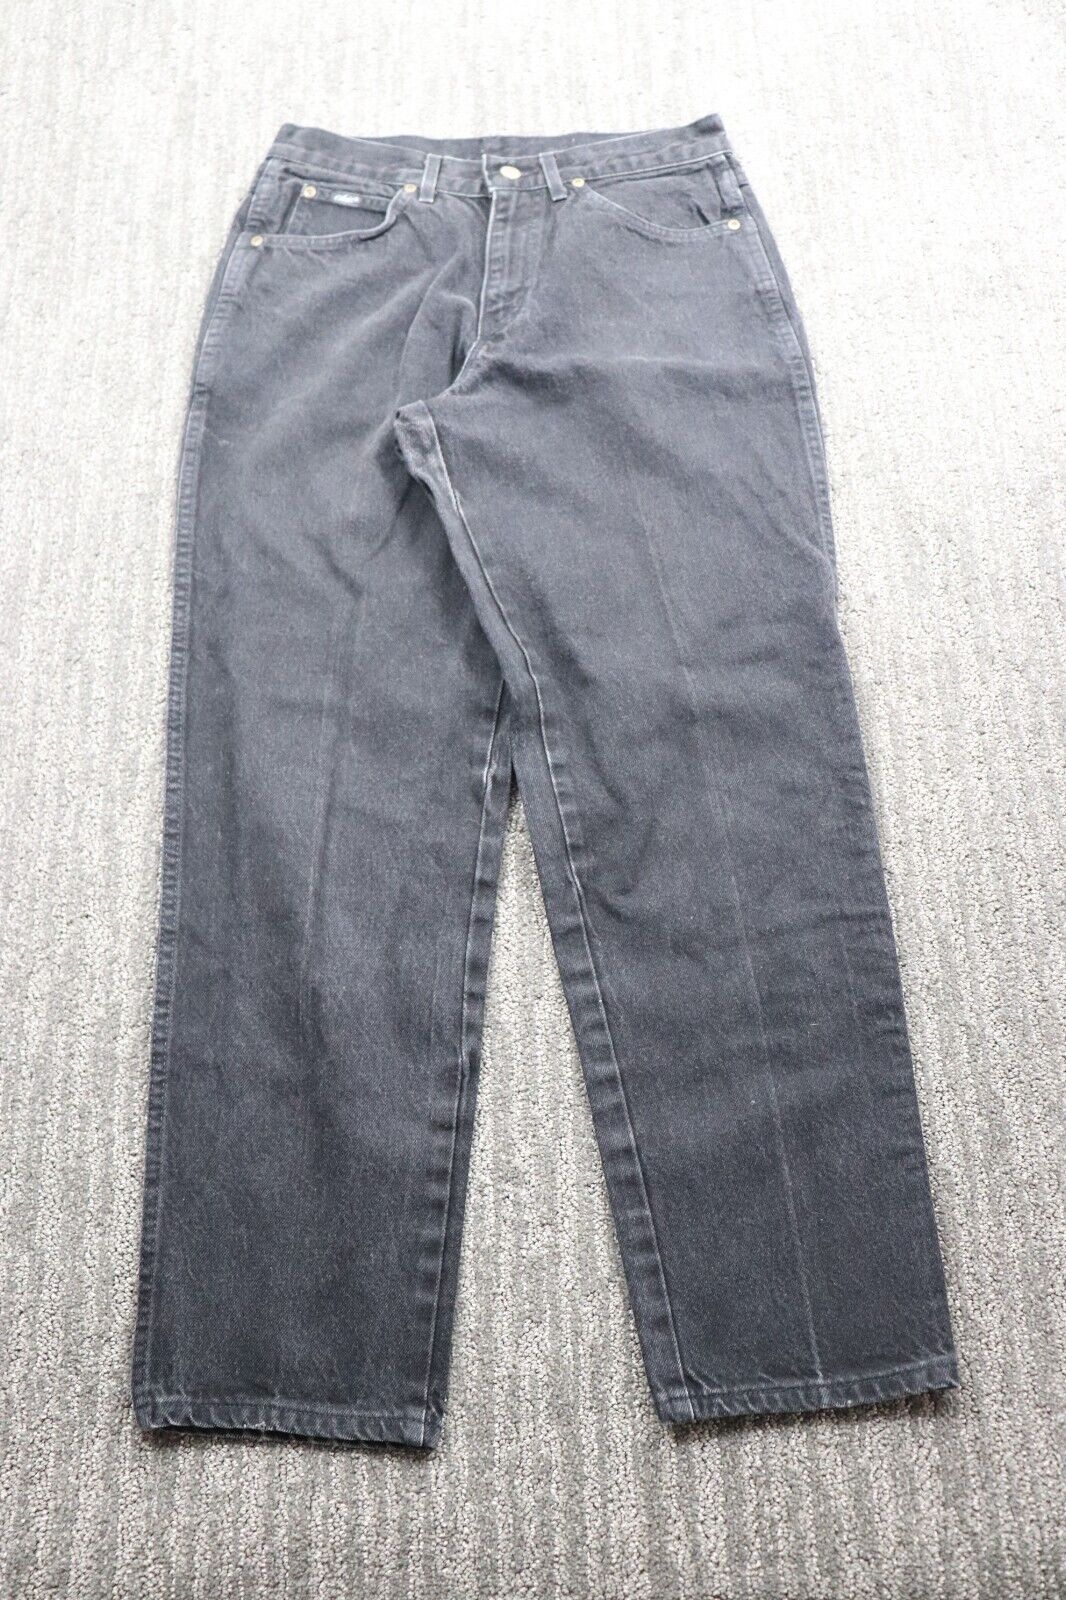 VTG Chic Women Jeans 12P Black Vintage Petite Denim Classic Casual American Pant